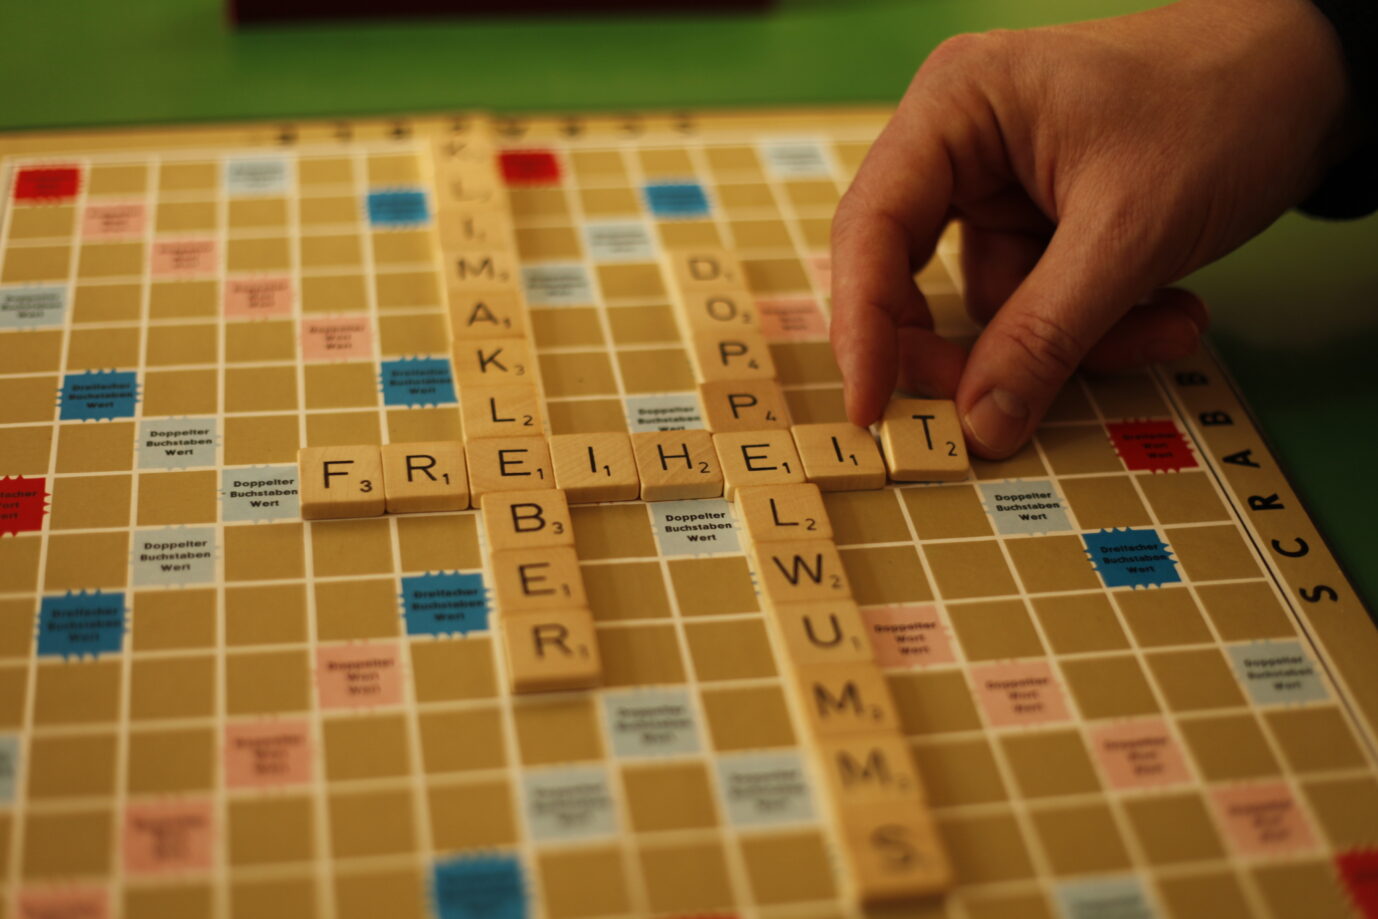 Ein Scrabble-Spielfeld zeigt die Begriffe "Doppelwums", "Freiheit" und "Klimakleber".